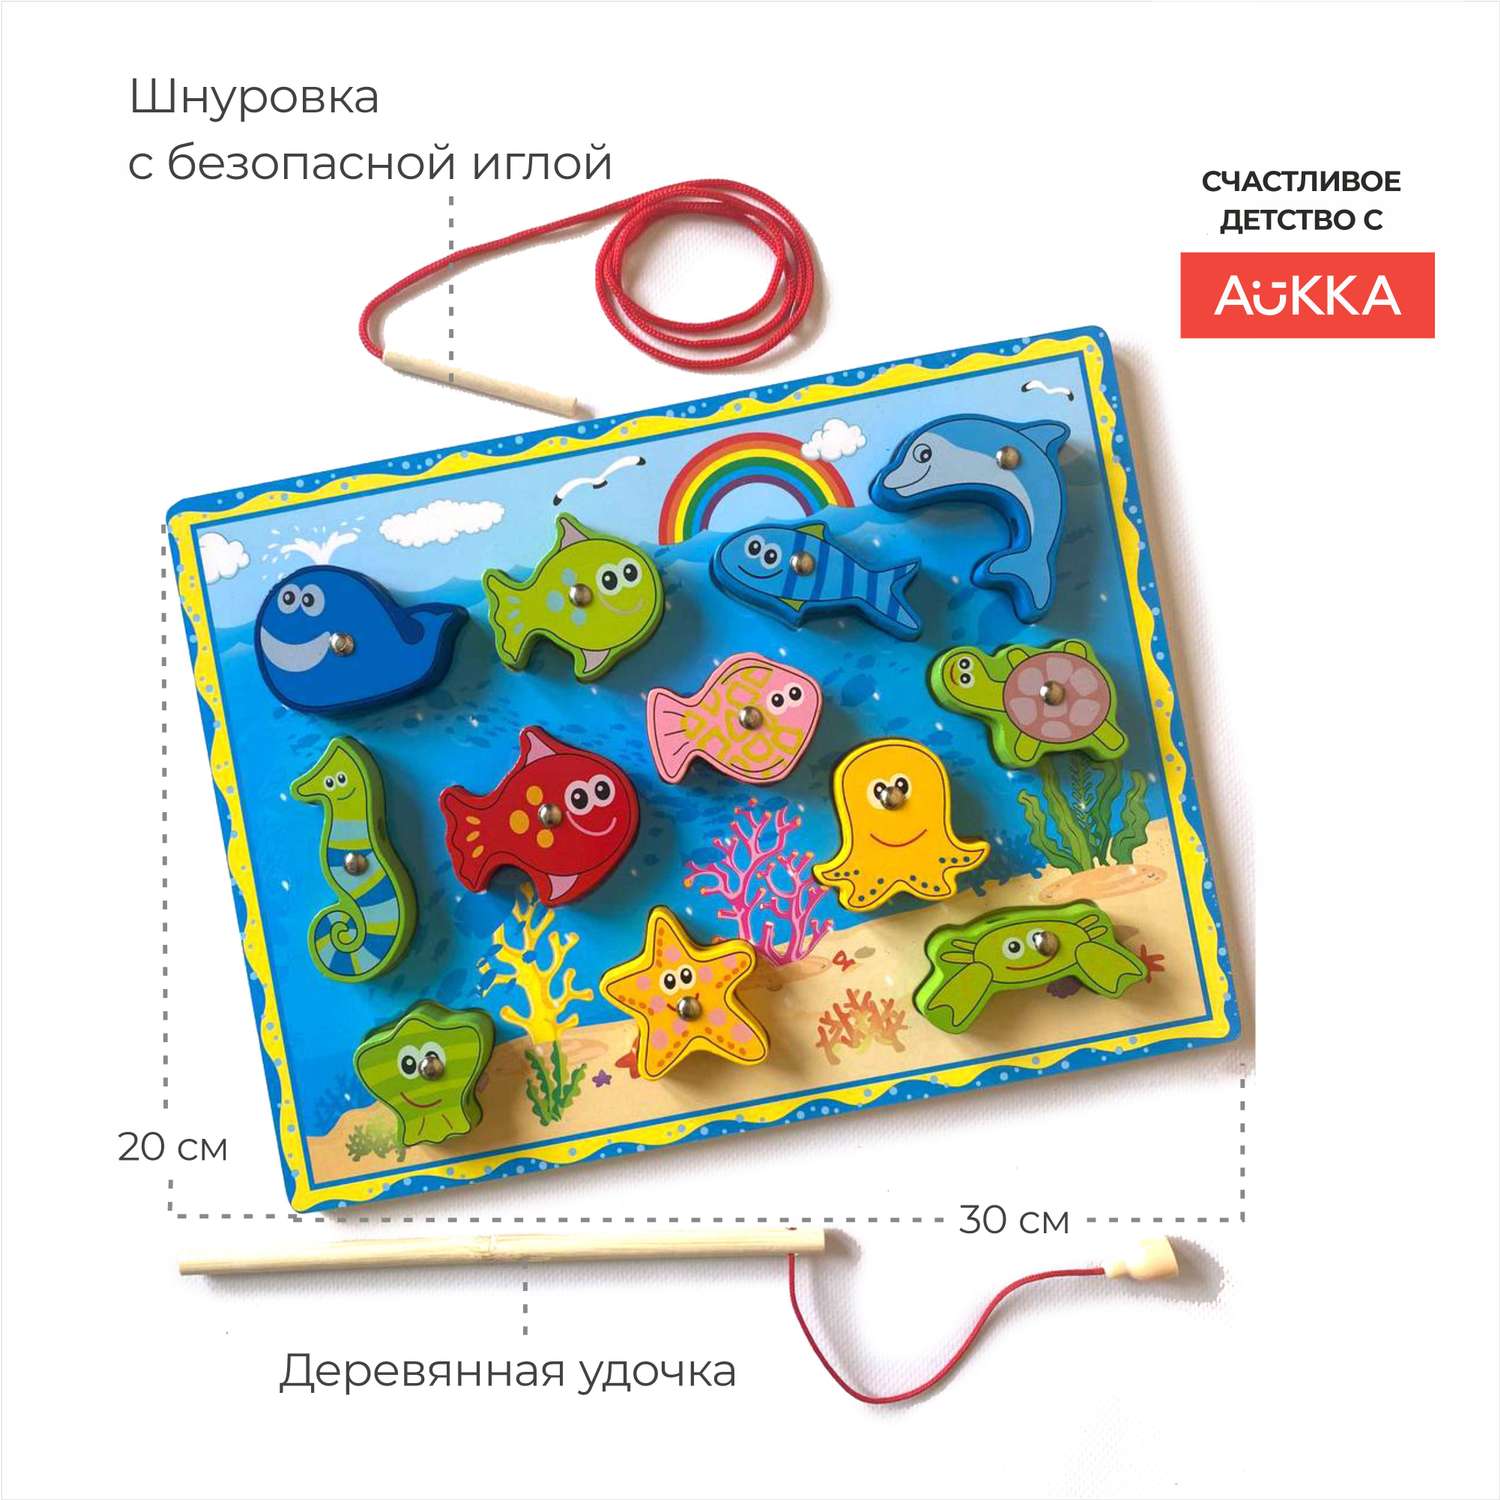 Развивающая детская игра AUKKA Сортер магнитная рыбалка по методике Монтессори - фото 6